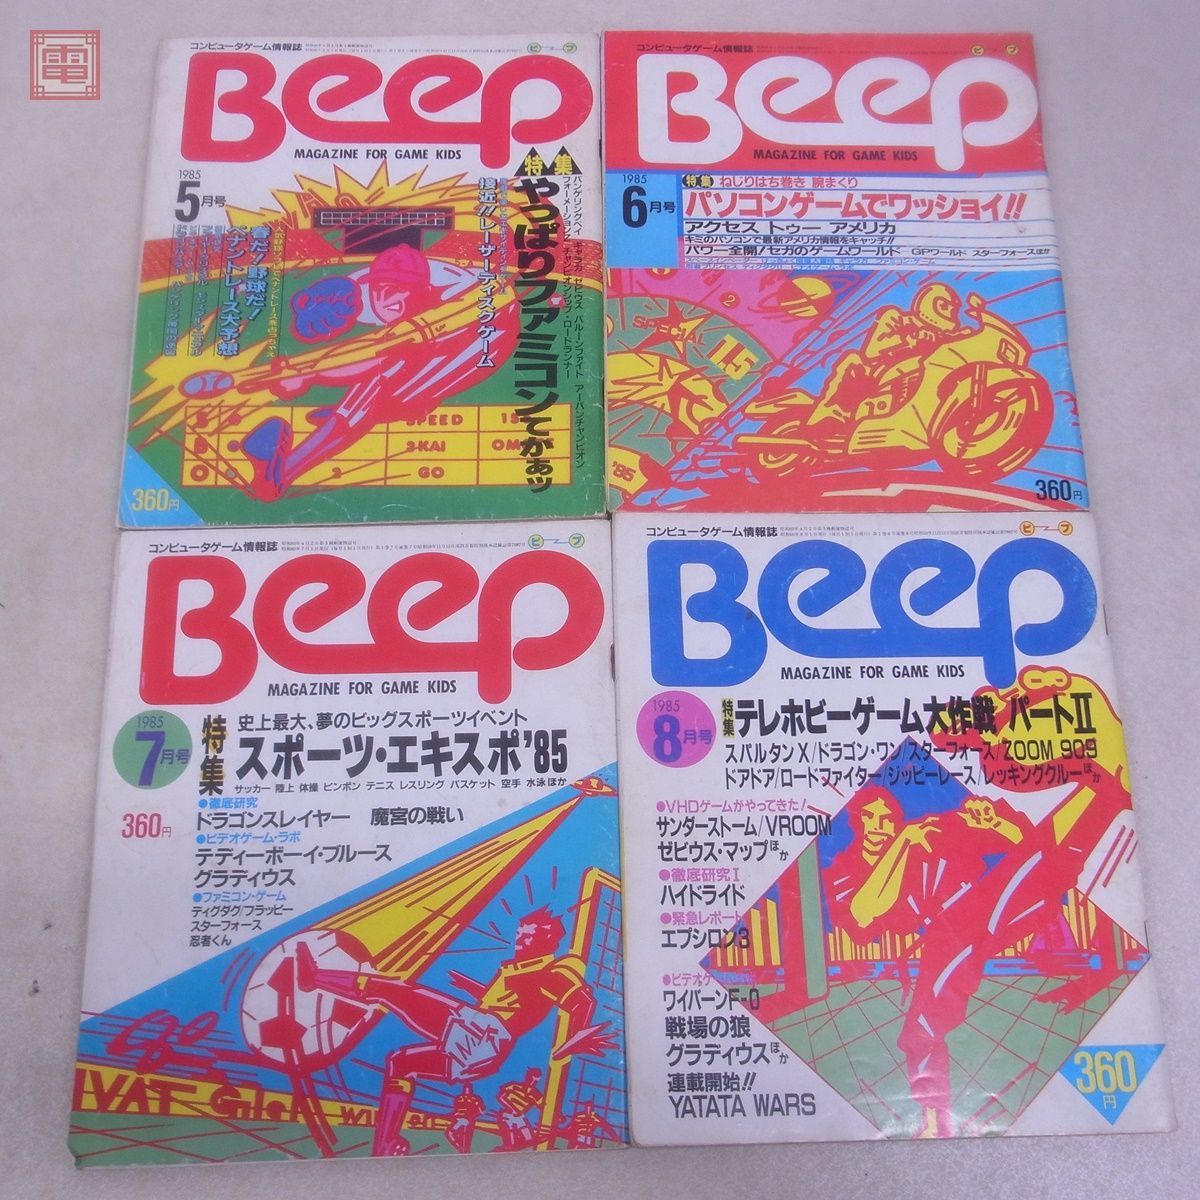  журнал компьютернные игры информация журнал ежемесячный Beep 1985 год 1 месяц .. номер ~12 месяц номер через год .. открытка есть совместно 12 шт. комплект Be p Япония SoftBank [20